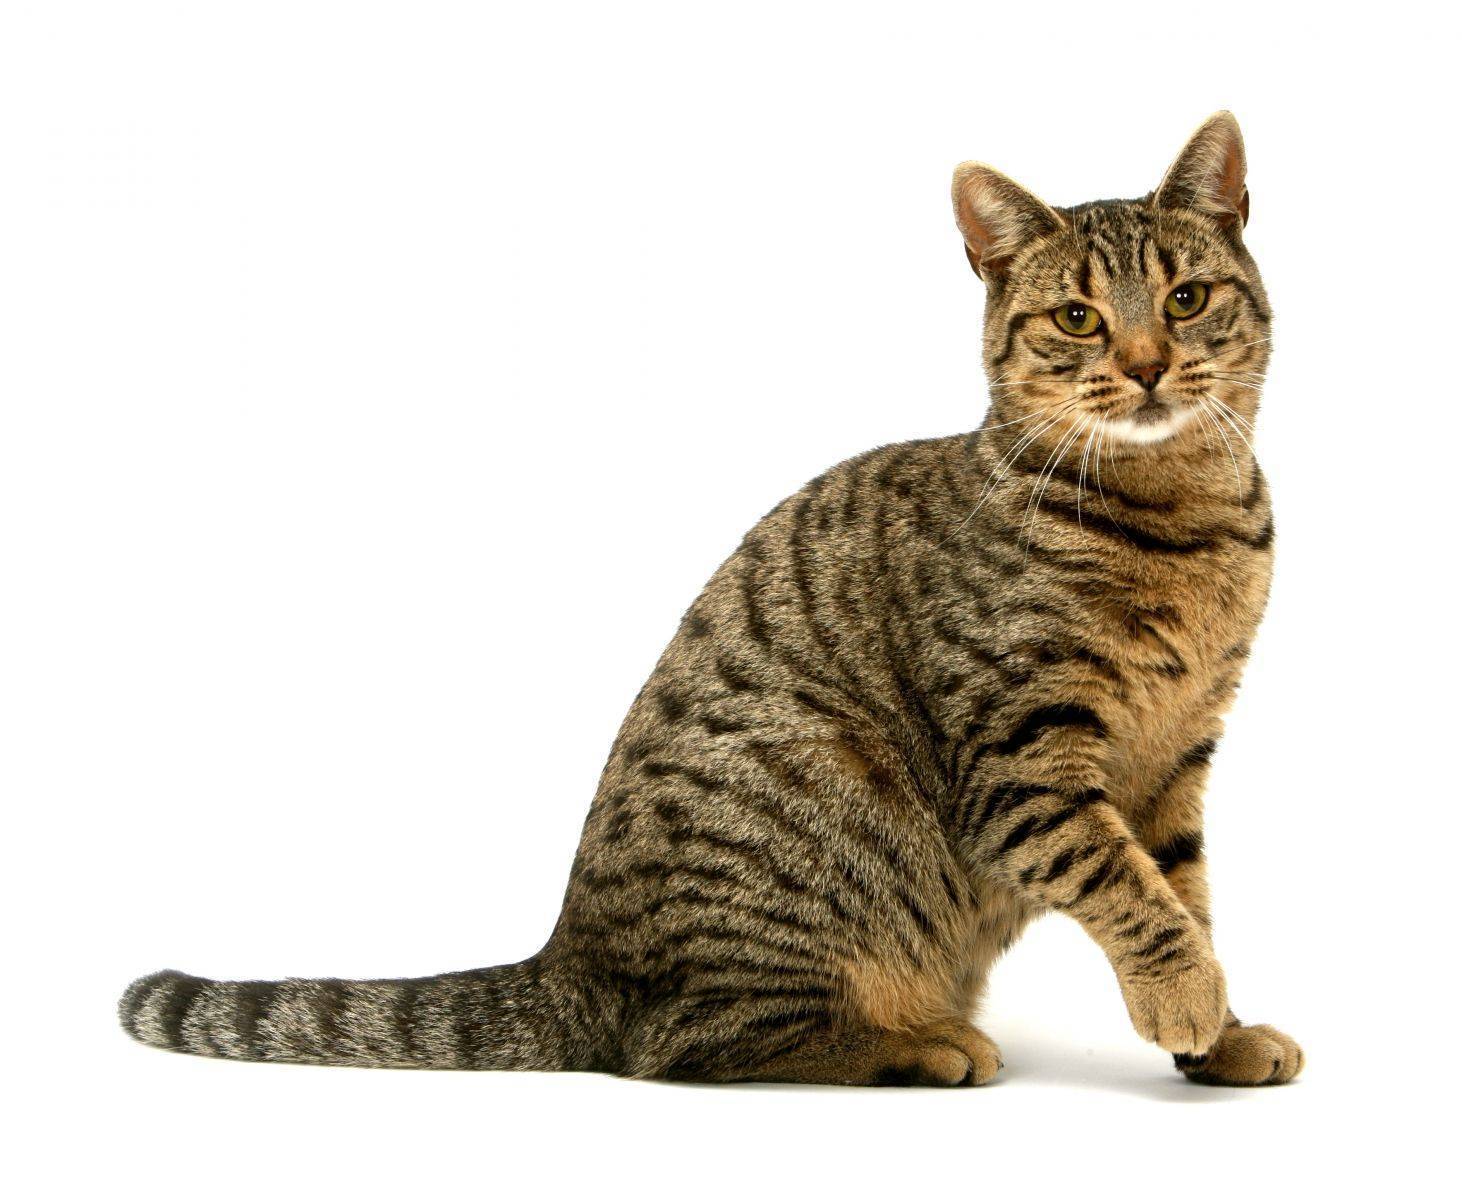 Гималайская кошка (100 фото): характер, уход за шерстью, происхождение породы, особенности, отзывы и  рекомендации по содержанию